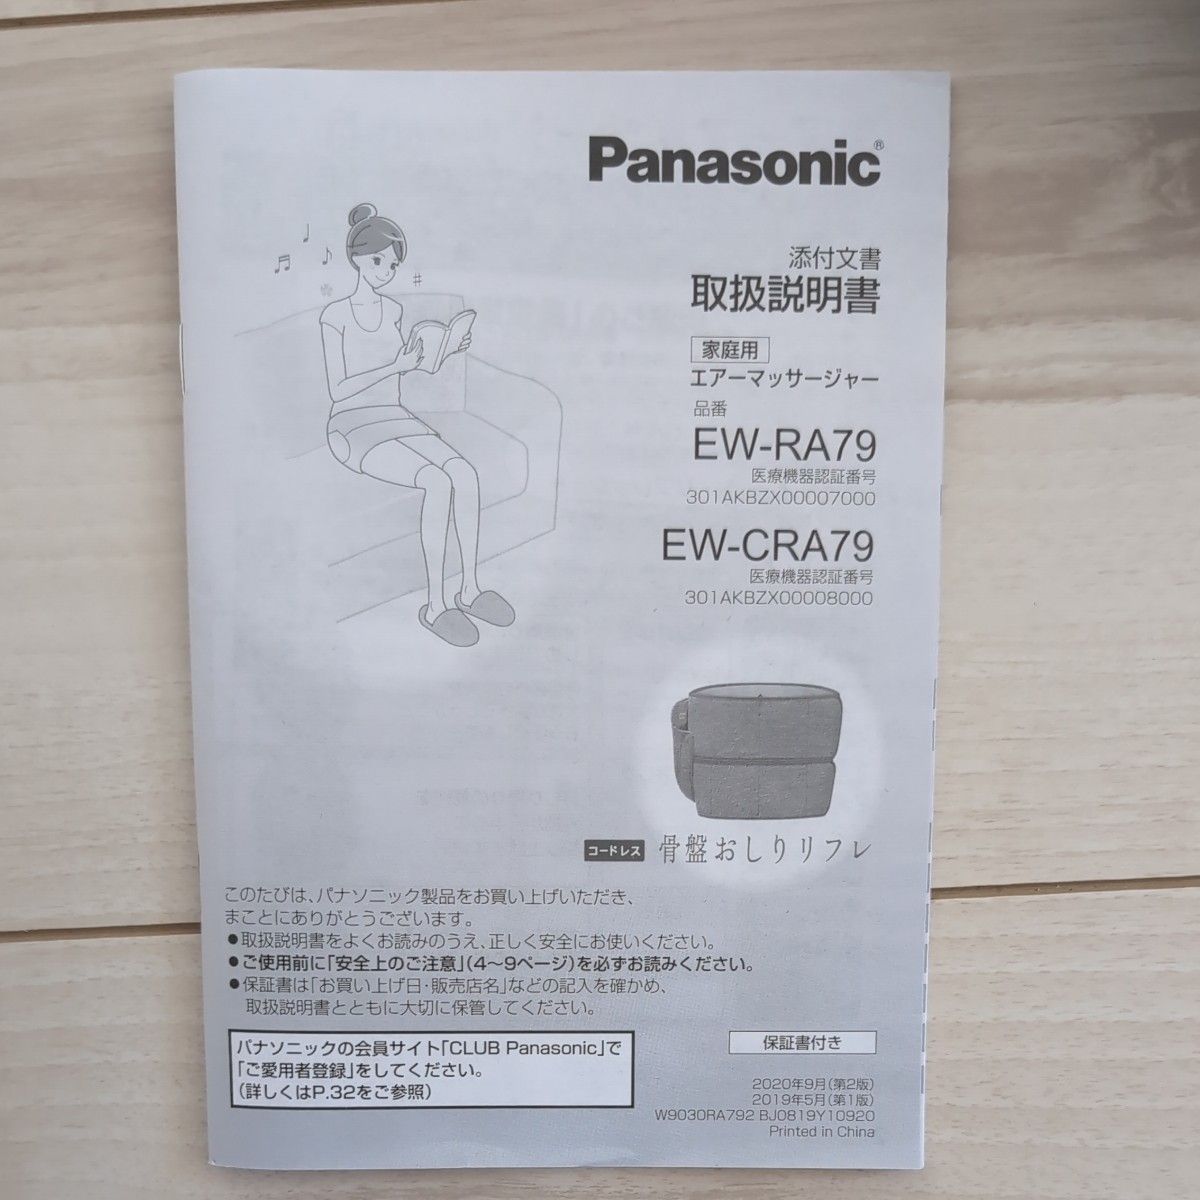 エアーマッサージャー Panasonic 骨盤リフレ